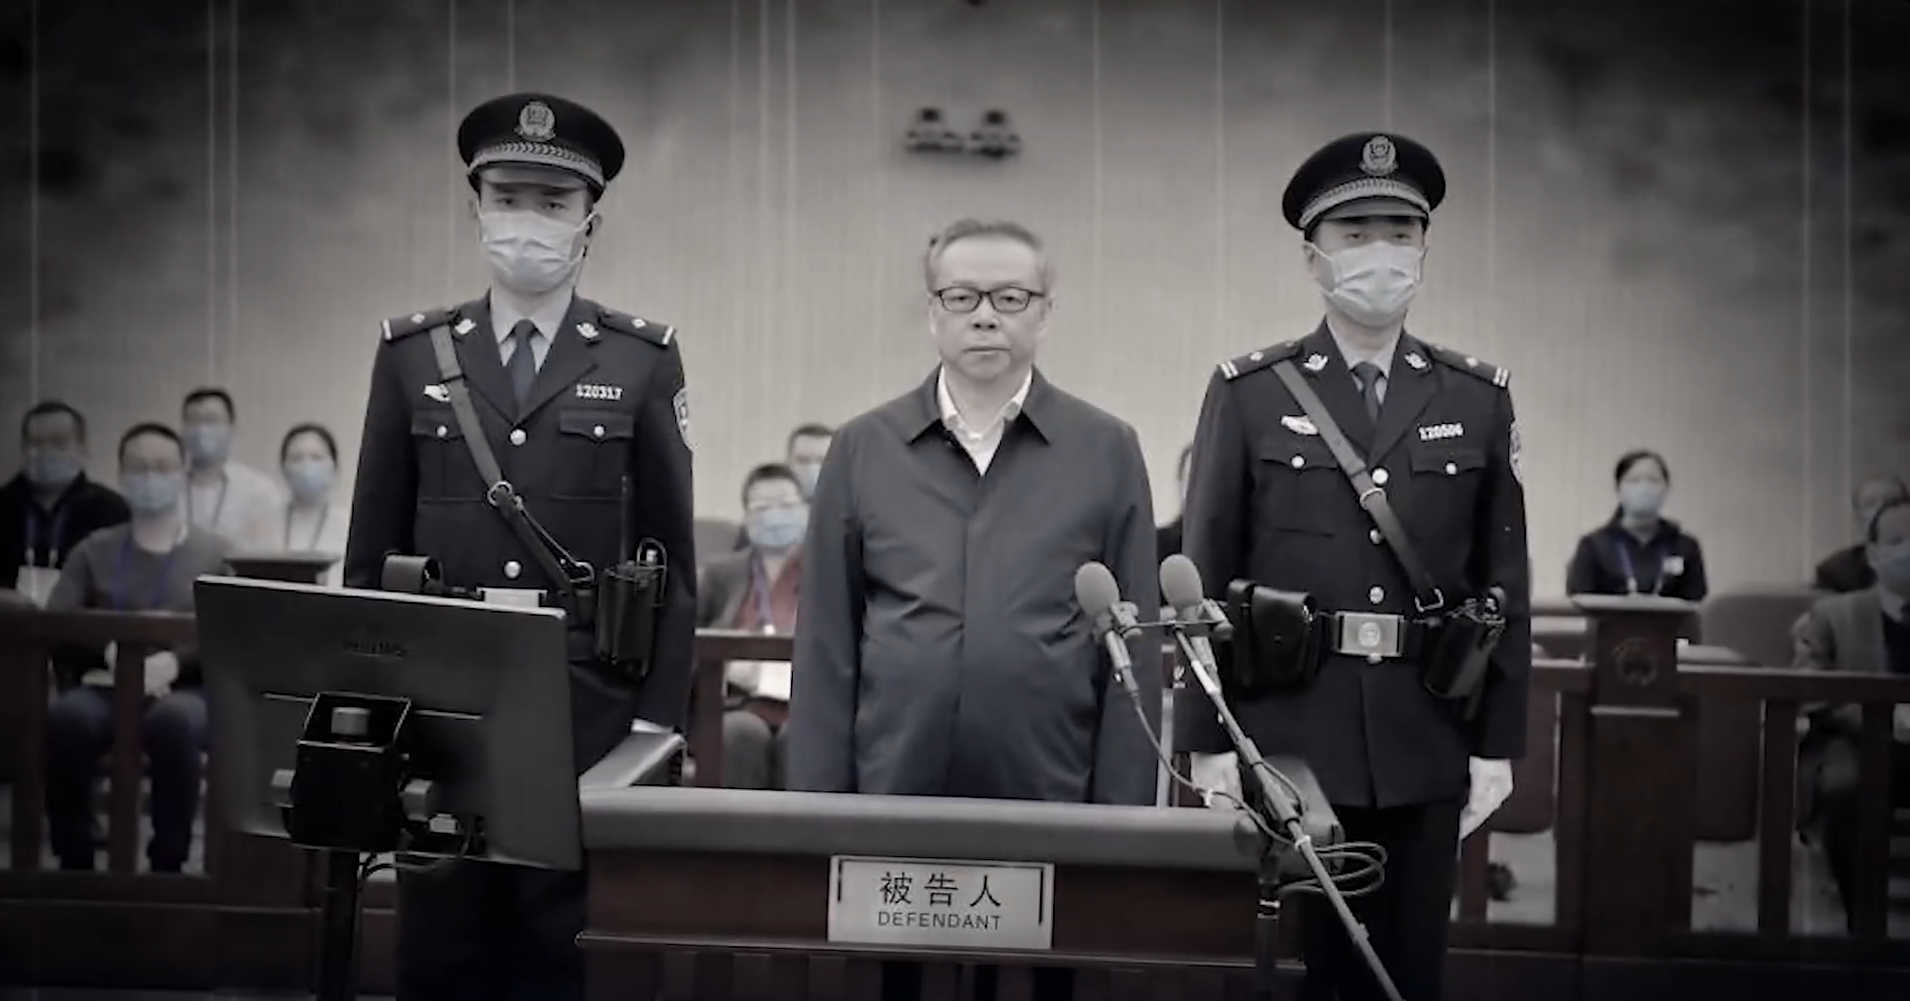 Ông Bạch Thiên Huy (Bai Tianhui) tại một phiên tòa xét xử tại Trung Quốc. (Ảnh: Từ video của NTD)